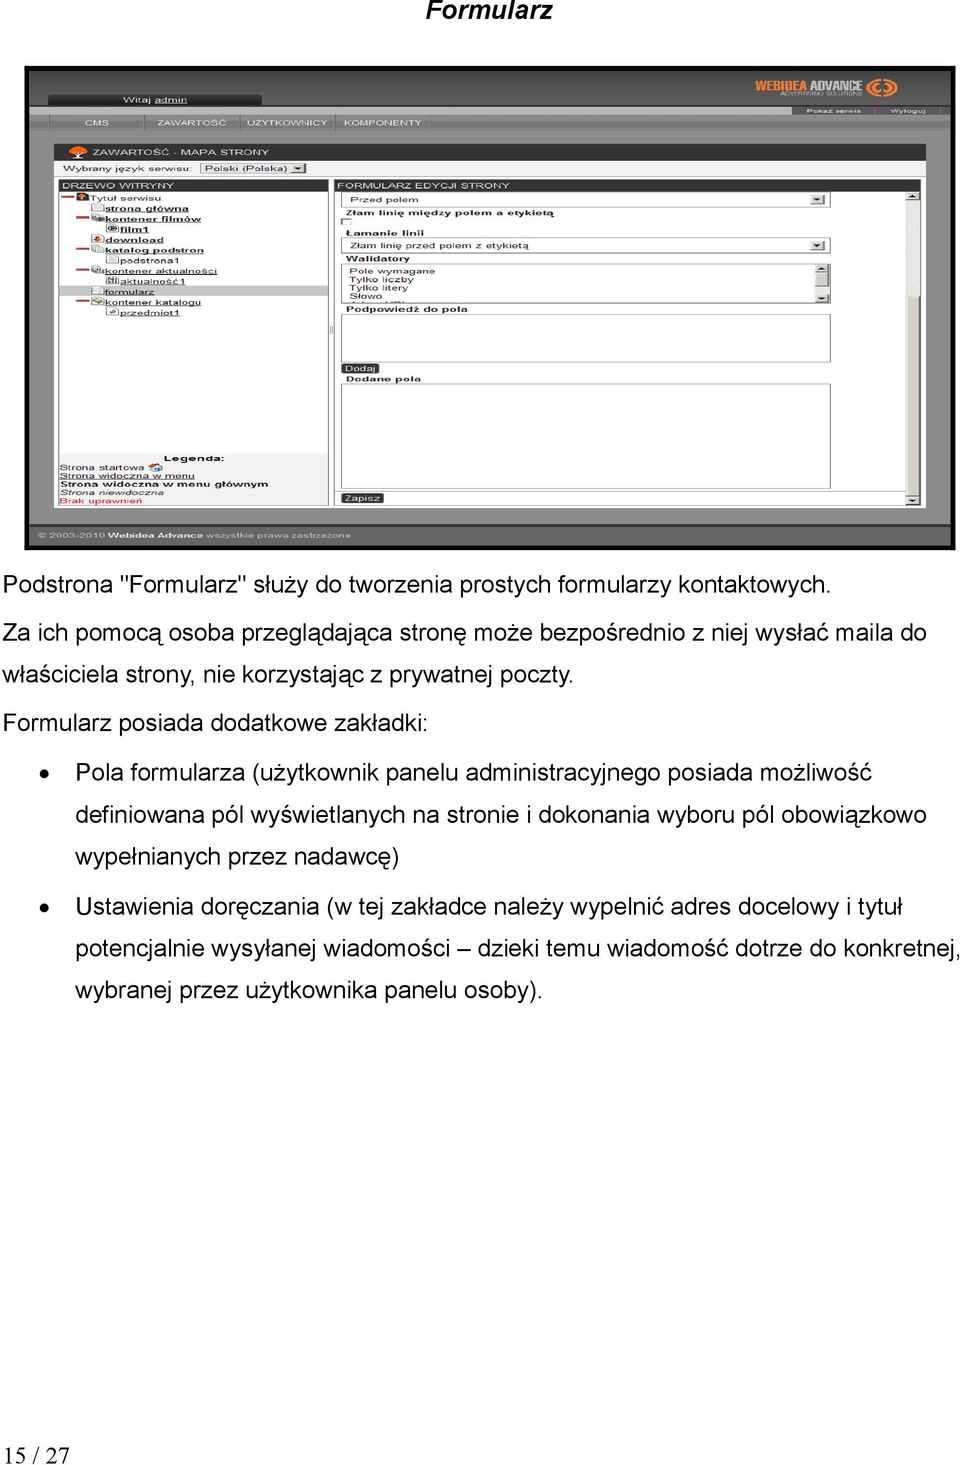 Formularz posiada dodatkowe zakładki: Pola formularza (użytkownik panelu administracyjnego posiada możliwość definiowana pól wyświetlanych na stronie i